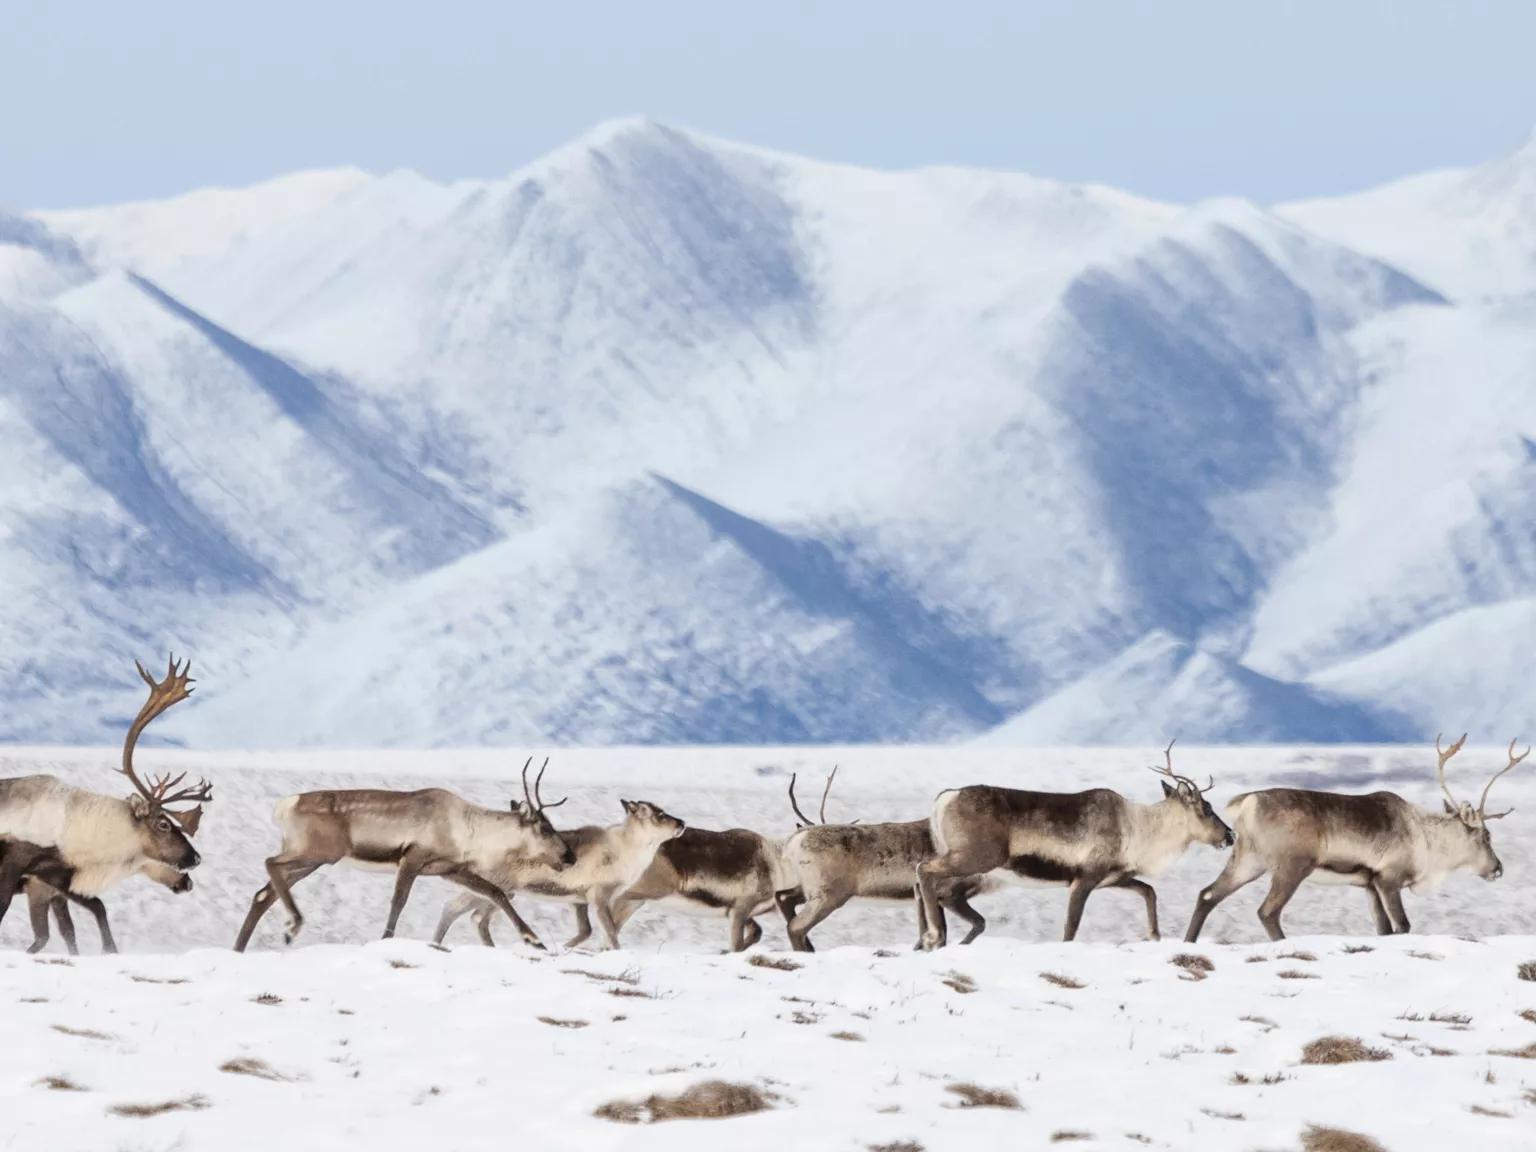 A herd of caribou walking across a snowy plain